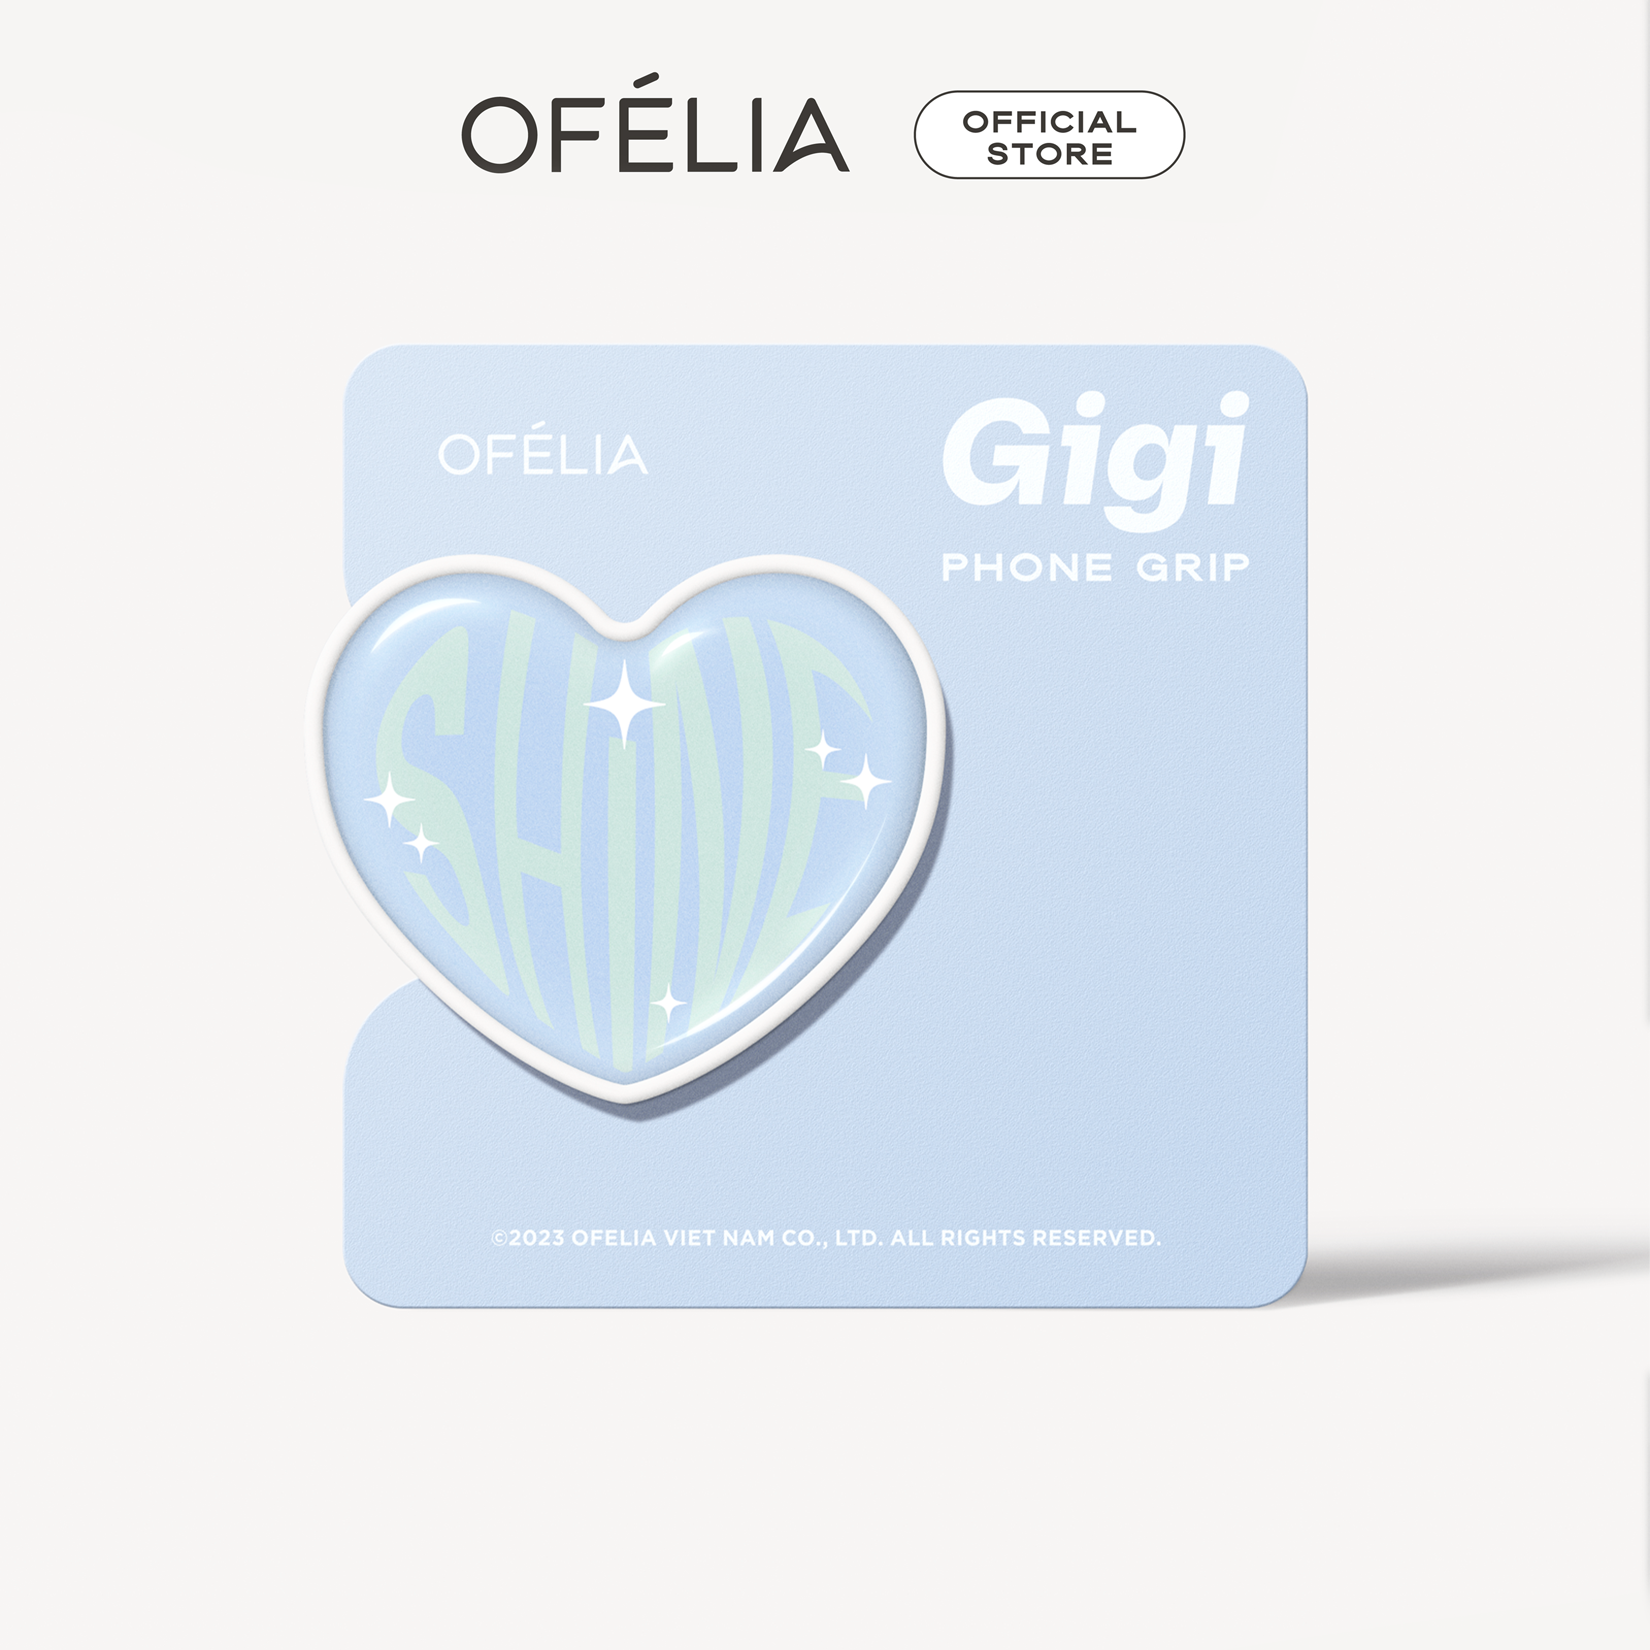 Giá Đỡ Điện Thoại OFÉLIA Gigi Phone Grip (10g)